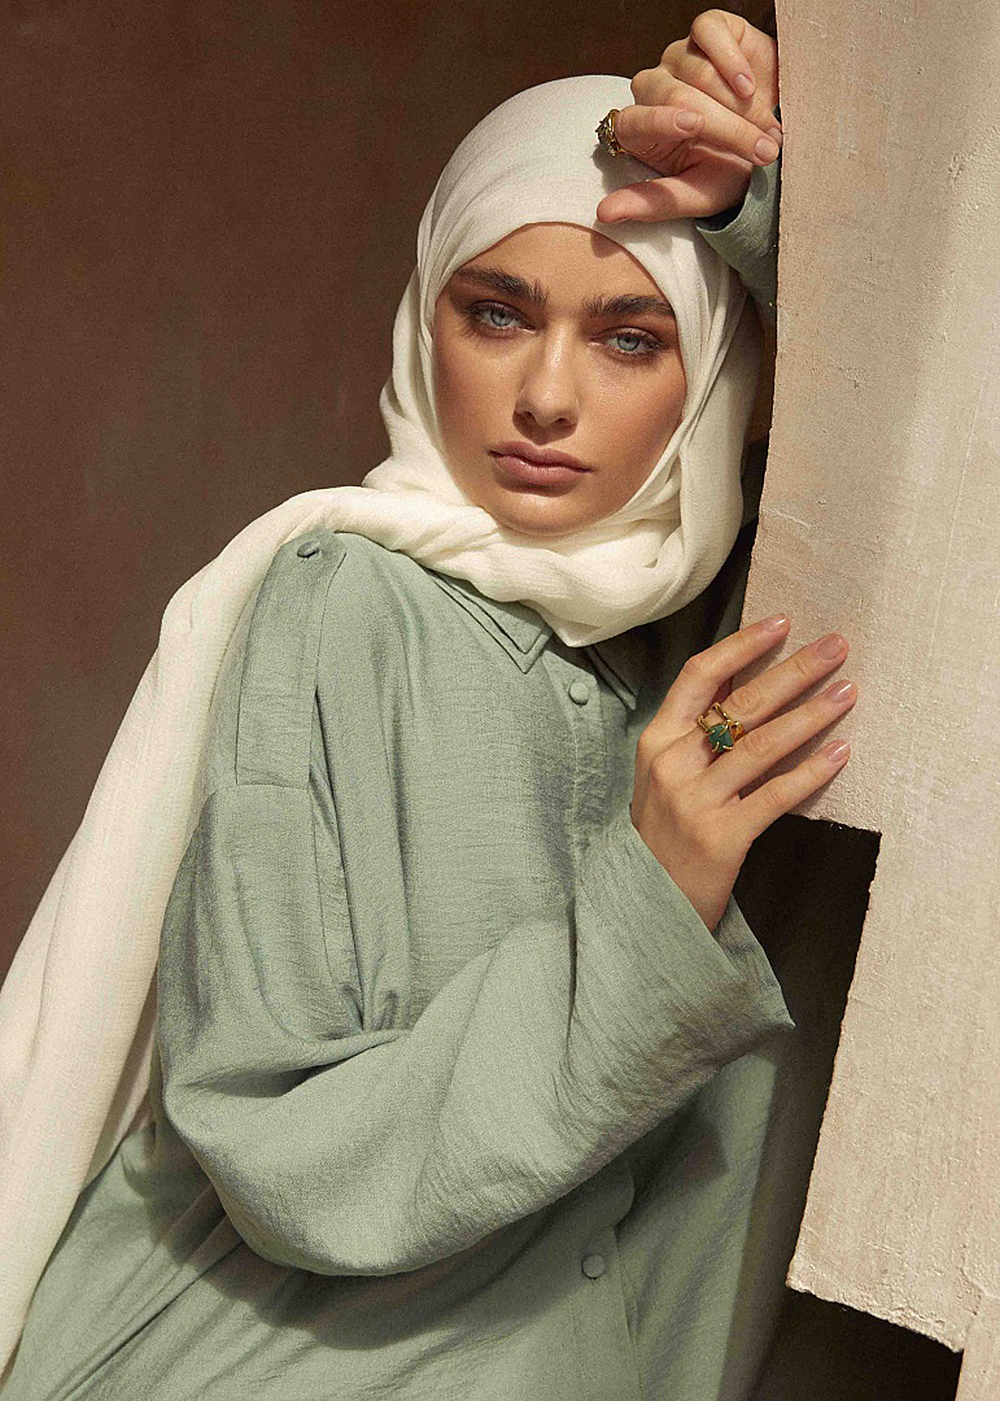 Фото из лукбука капсульной коллекции лета 2020 бренда Arapkhanovi, который создали сёстры Луиза и Хадижа Арапхановы родом из Ингушетии. Свой бренд они позиционируют как олицетворение исламской духовности и светской действительности.